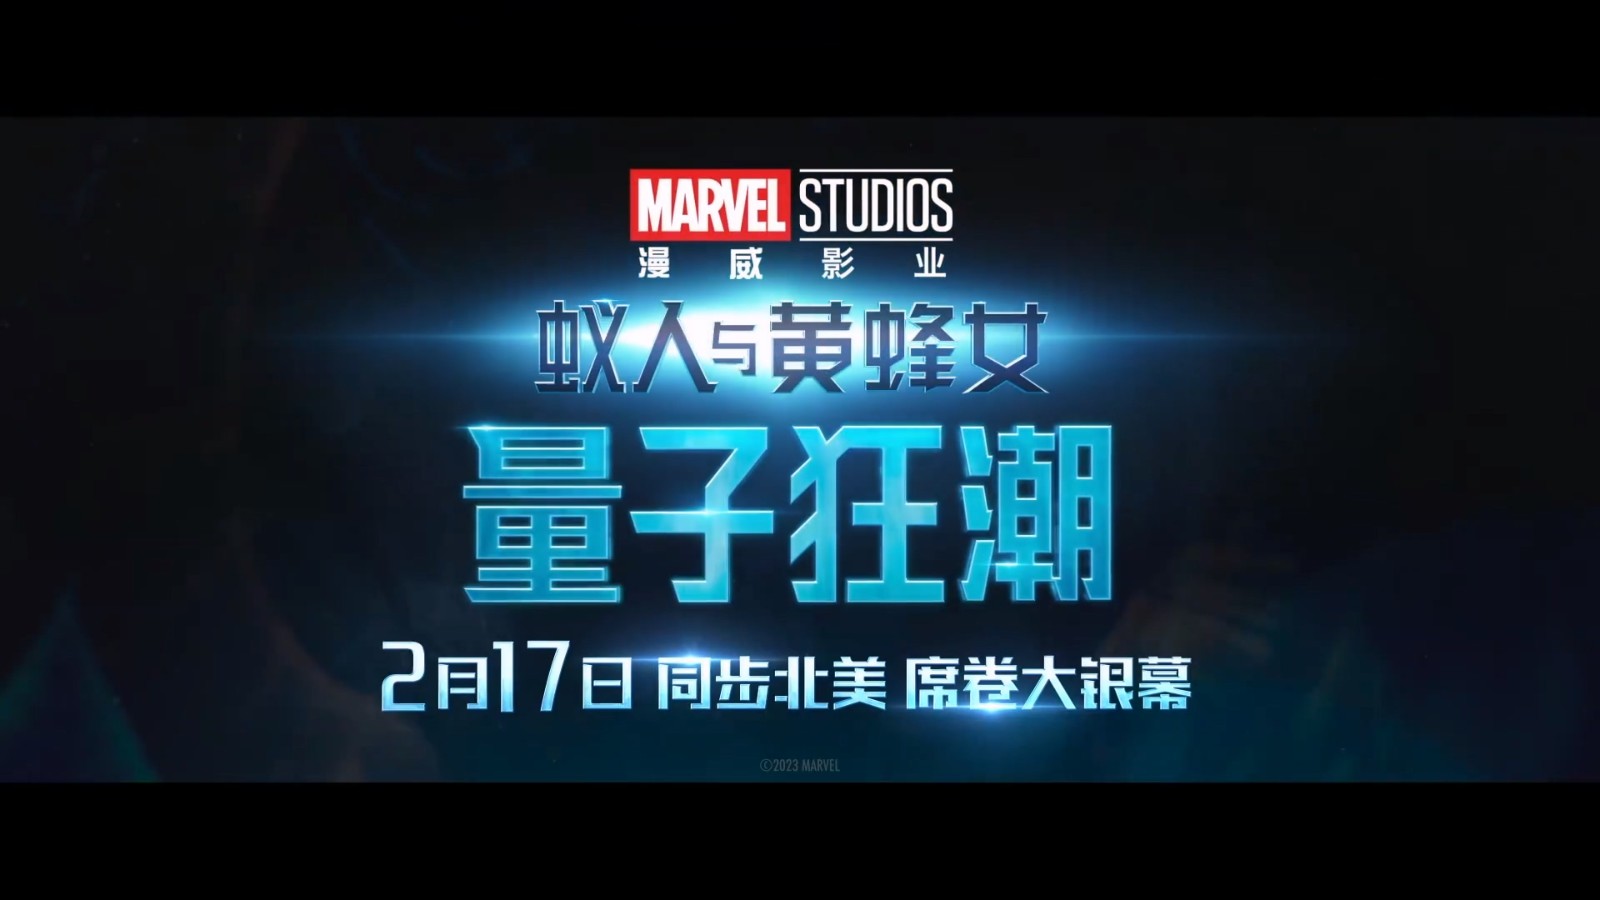 《蚁人3》终极版海报释出 2月17日全国上映